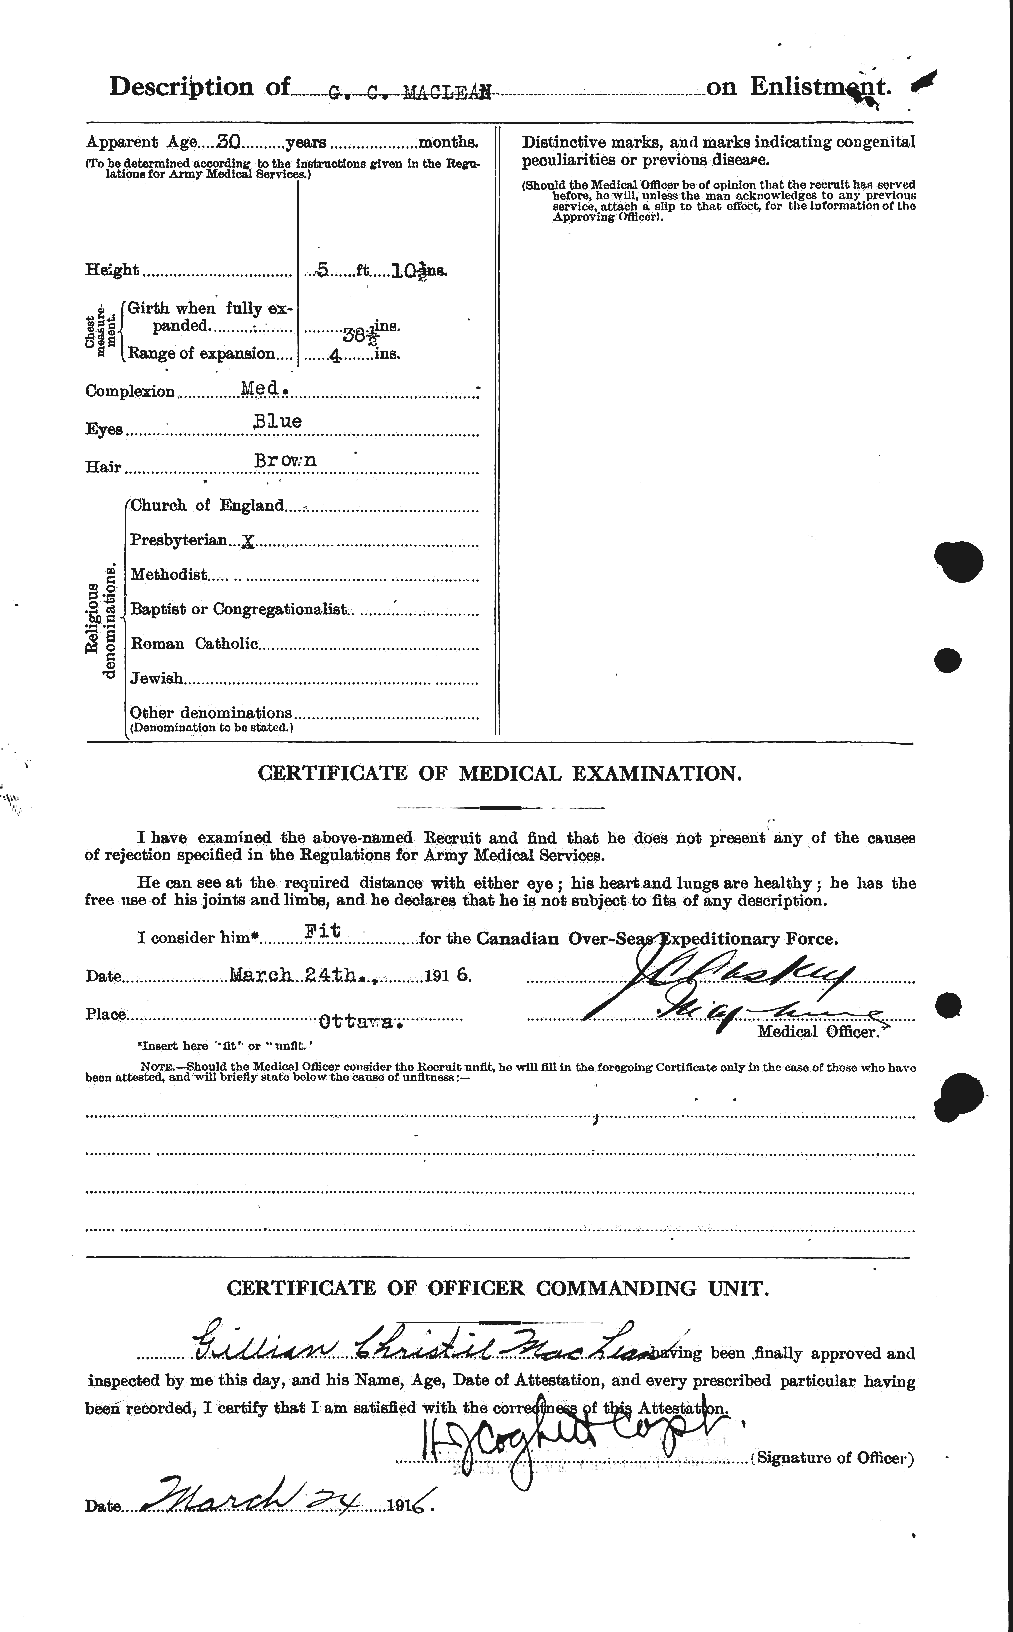 Dossiers du Personnel de la Première Guerre mondiale - CEC 540299b